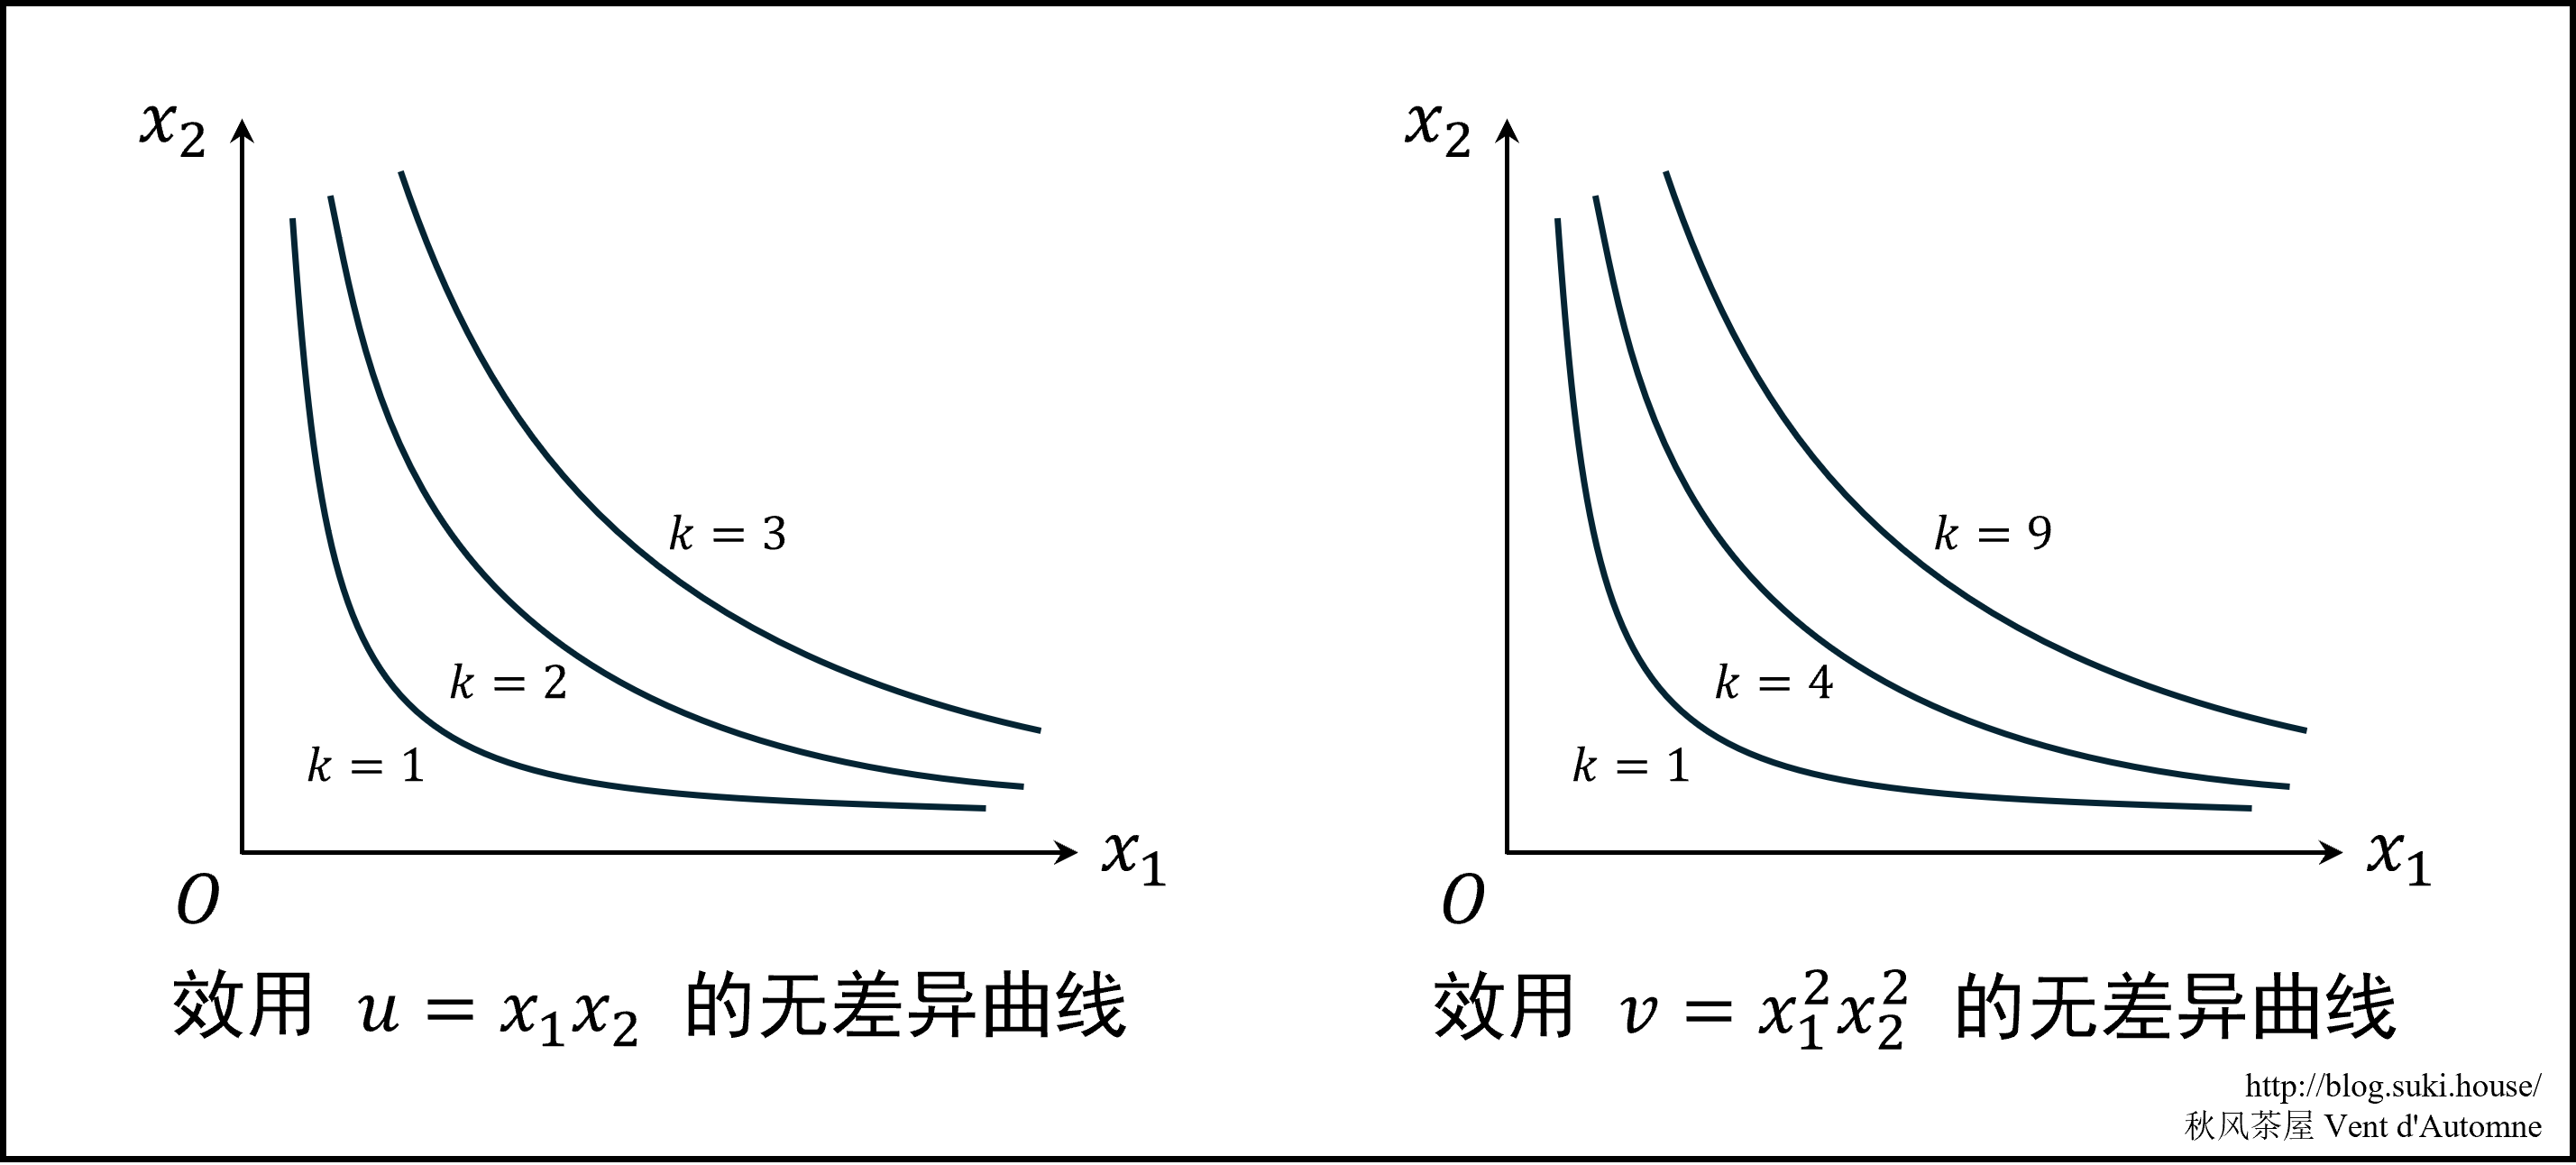 图 4.1: 由效用推导出无差异曲线